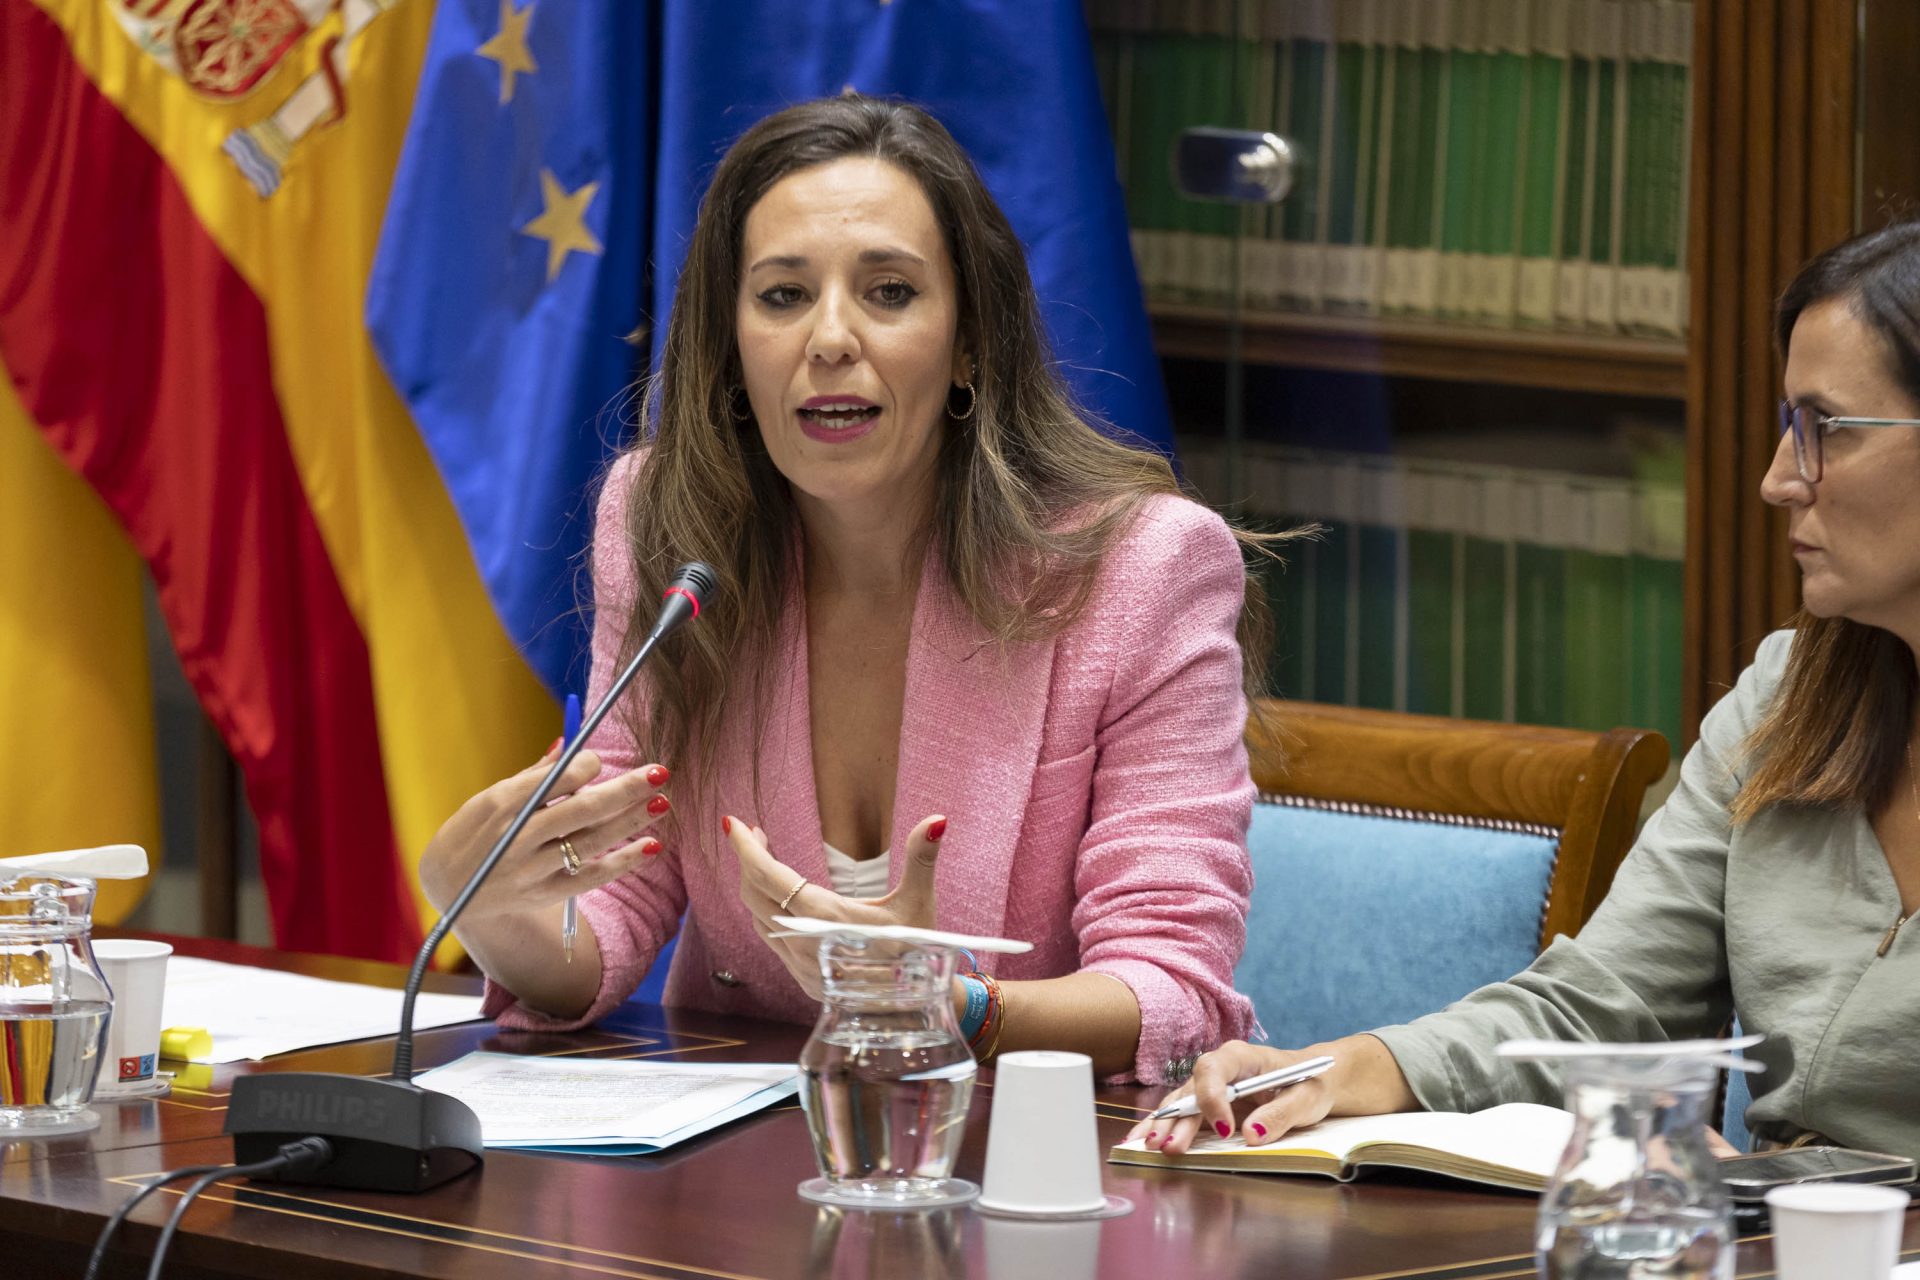 La consejera de Turismo del Gobierno de Canarias, Jéssica de León, interviene ante el Parlamento autonómico. EFE/Miguel Barreto